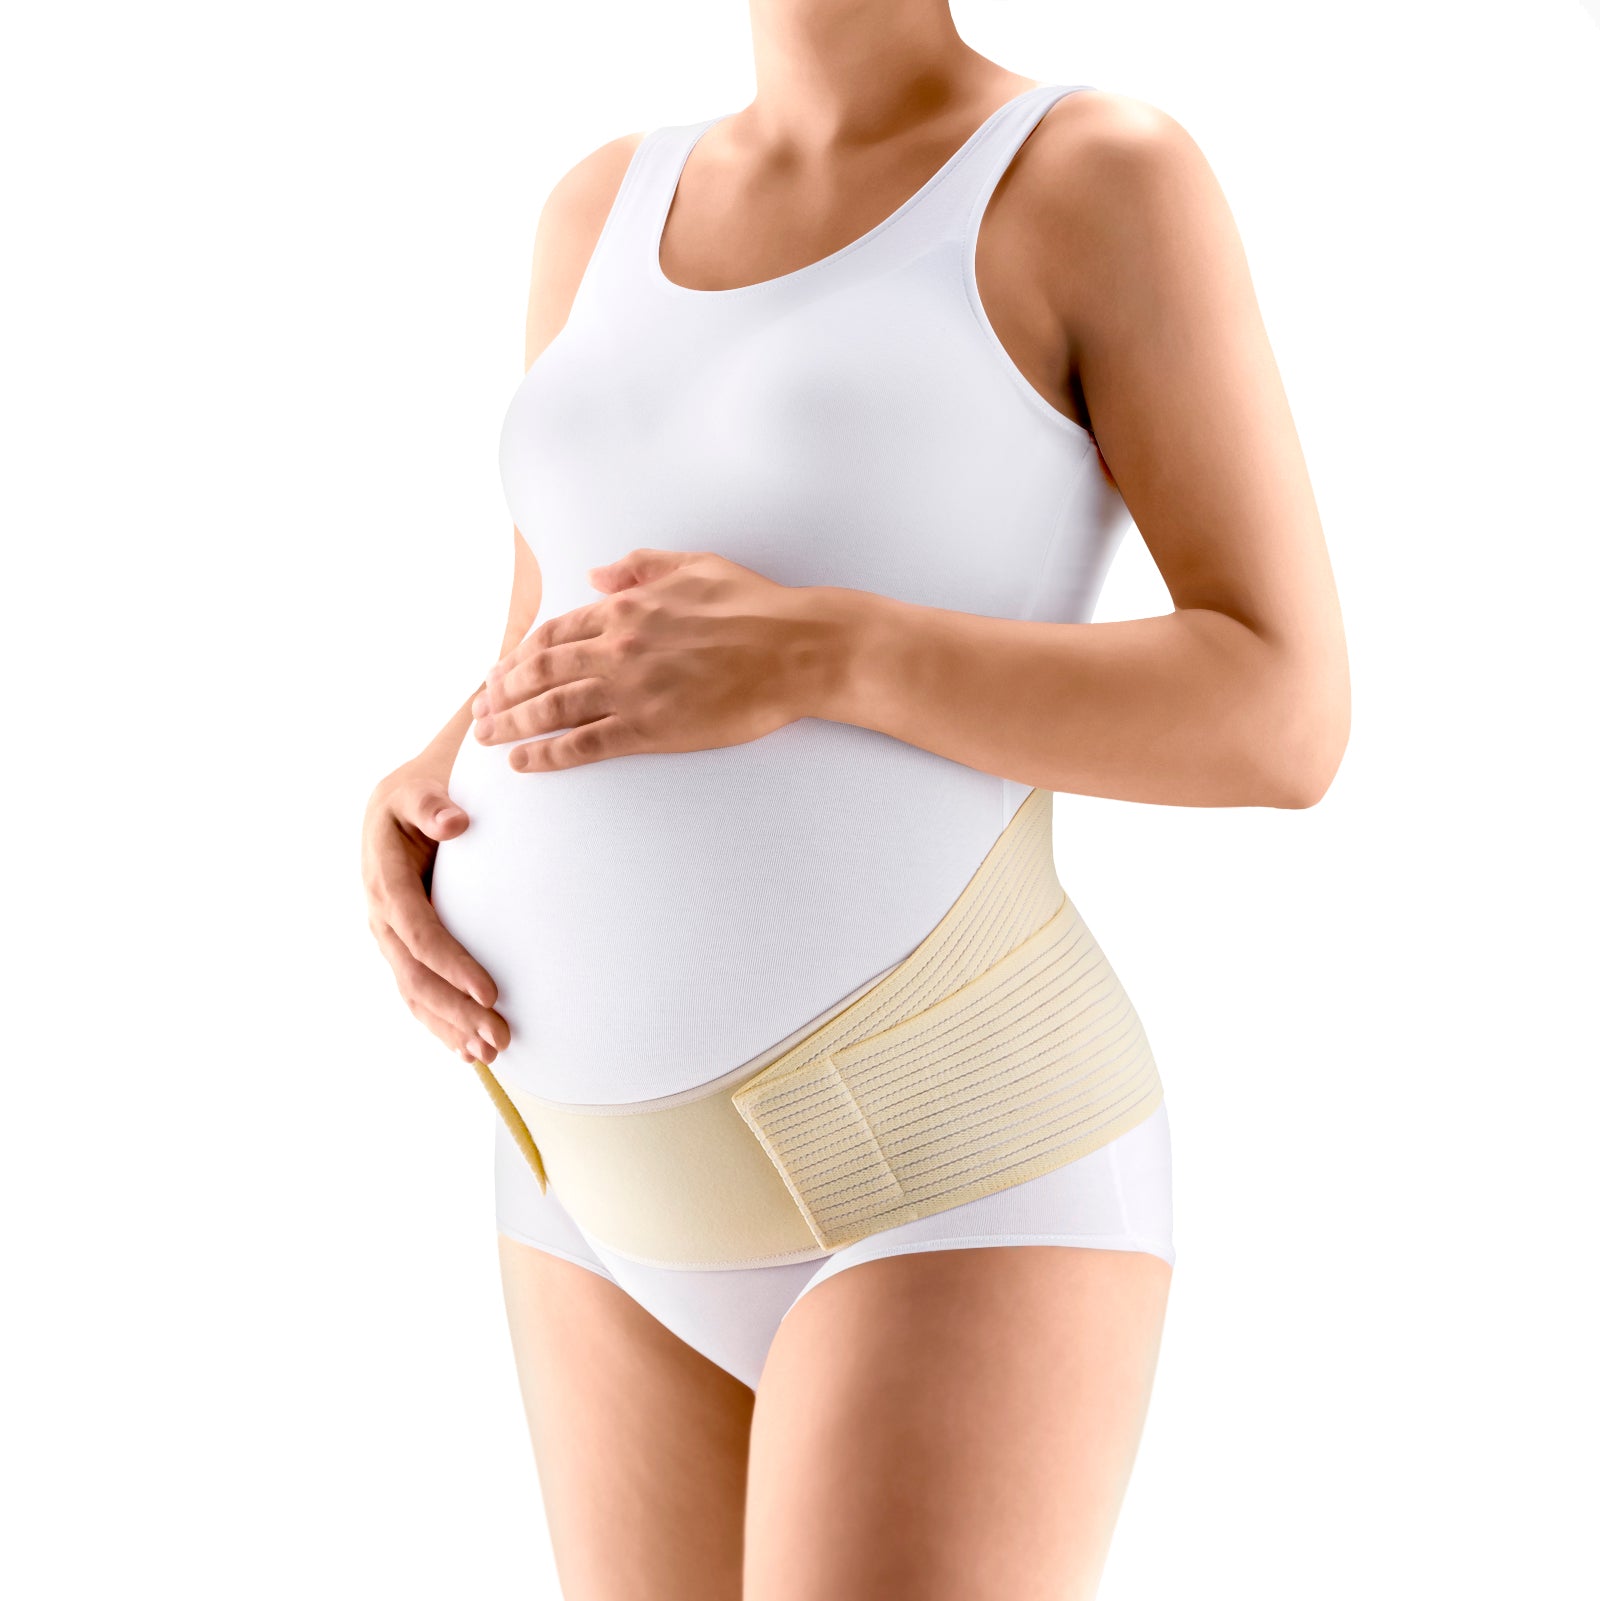 Tonus Elast Kira Maternity Belt with Corset Back Support for